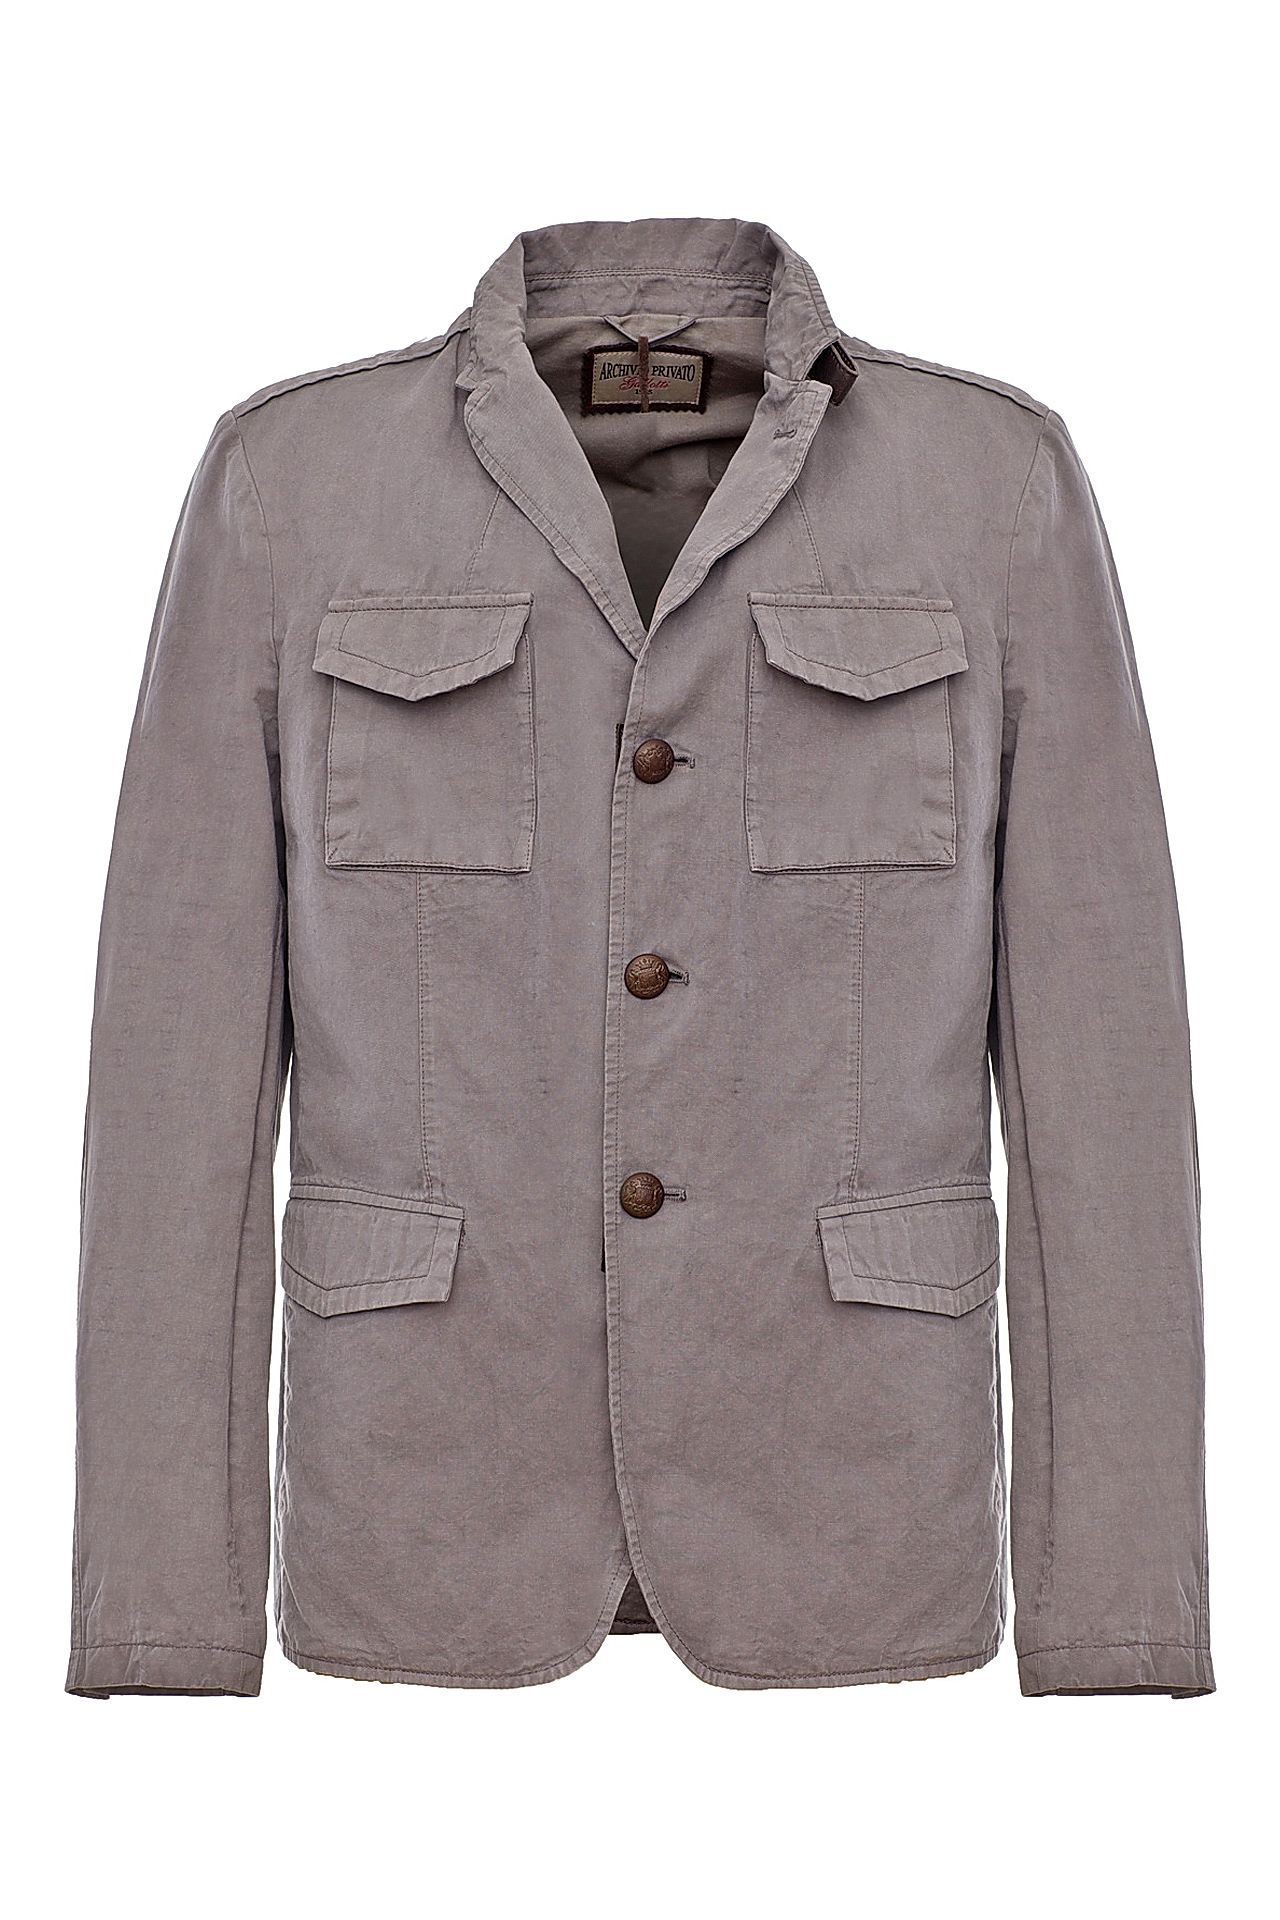 Одежда мужская Куртка GALLOTTI (521104/11.1). Купить за 22950 руб.